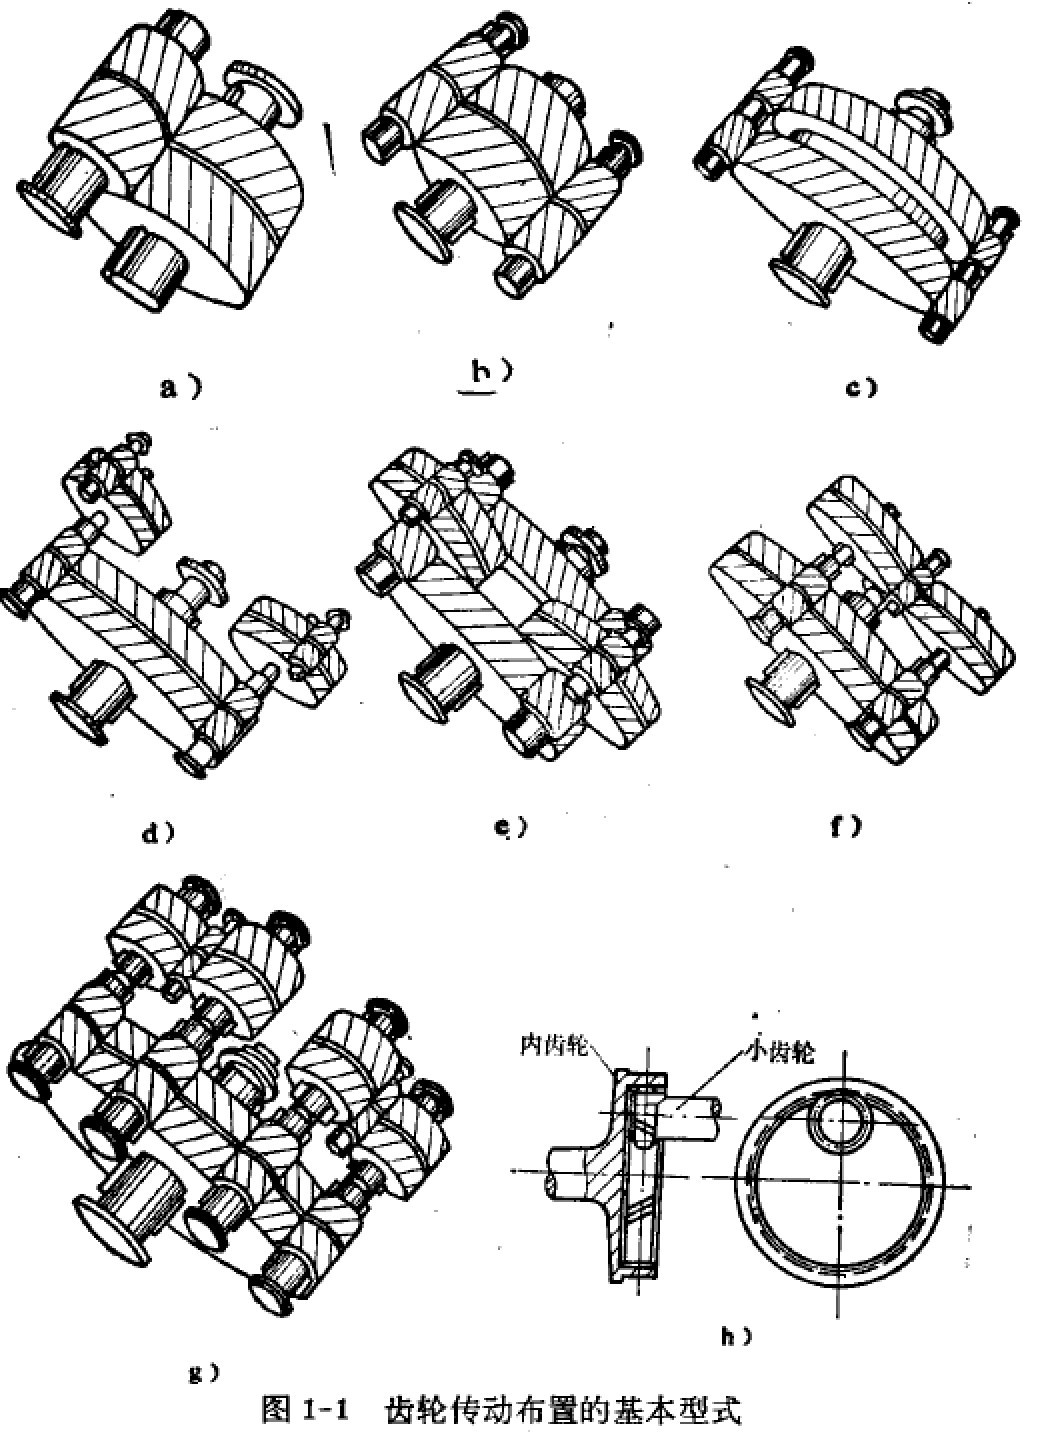 减速机齿轮传动布置的基本形式